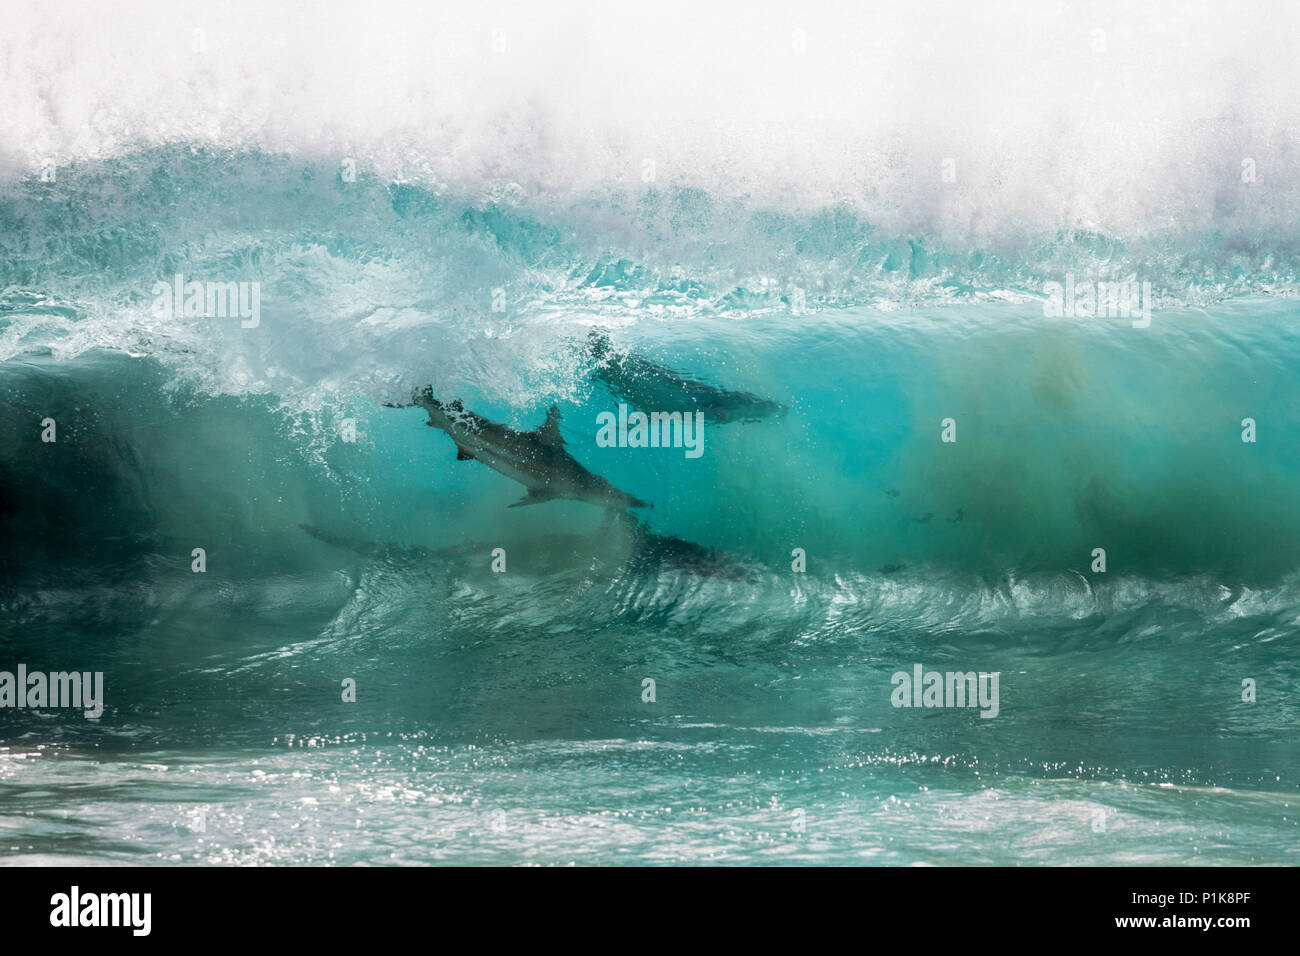 Les requins se nourrissent d'une boule d'appât dans le bris des vagues océaniques, Carnarvon, Western Australia, Australia Banque D'Images